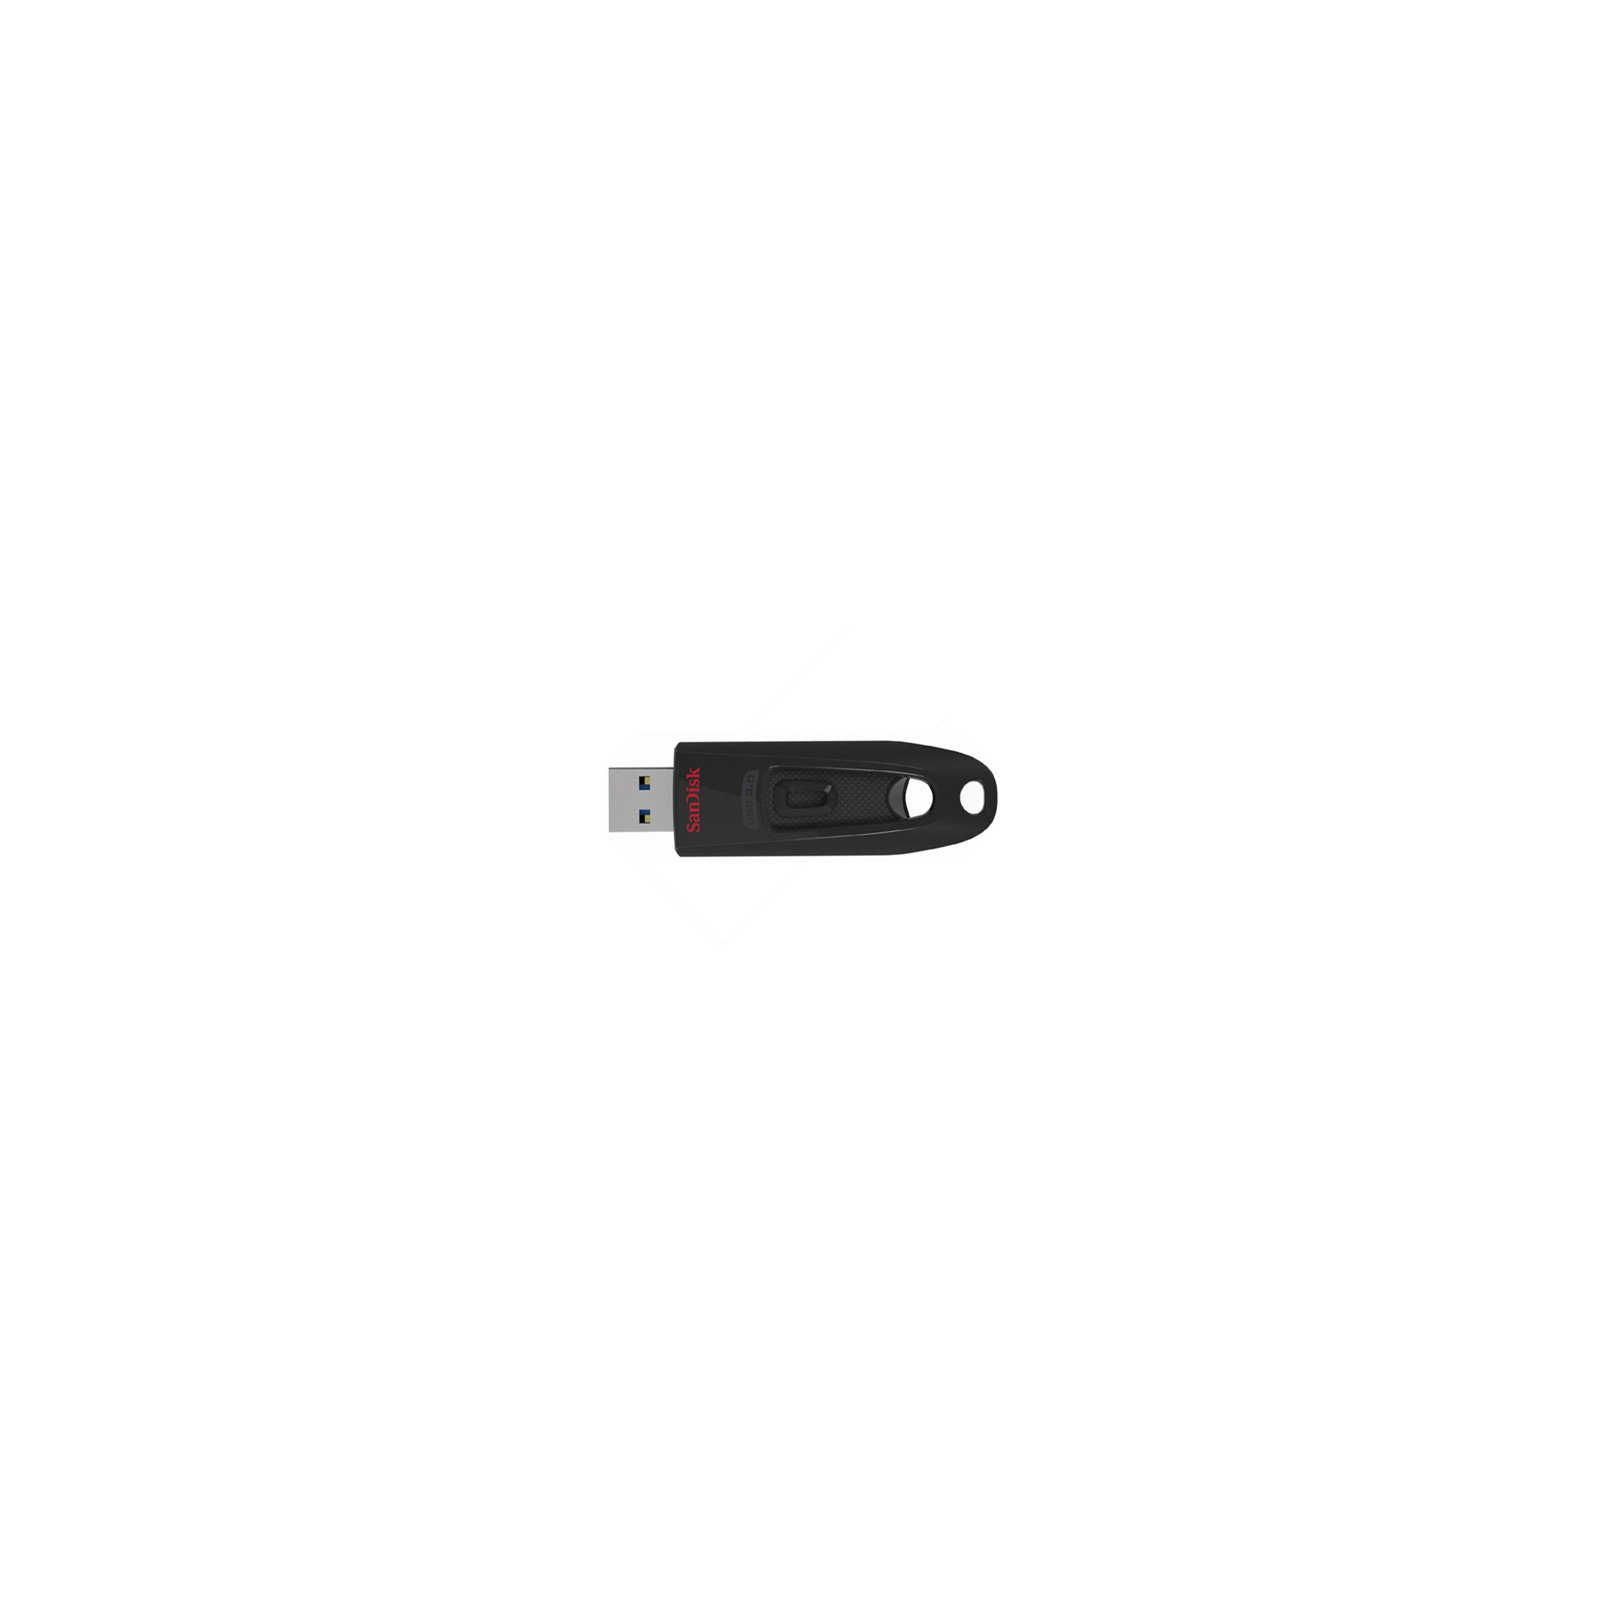 USB флеш накопичувач SanDisk 16Gb Ultra USB 3.0 (SDCZ48-016G-U46)